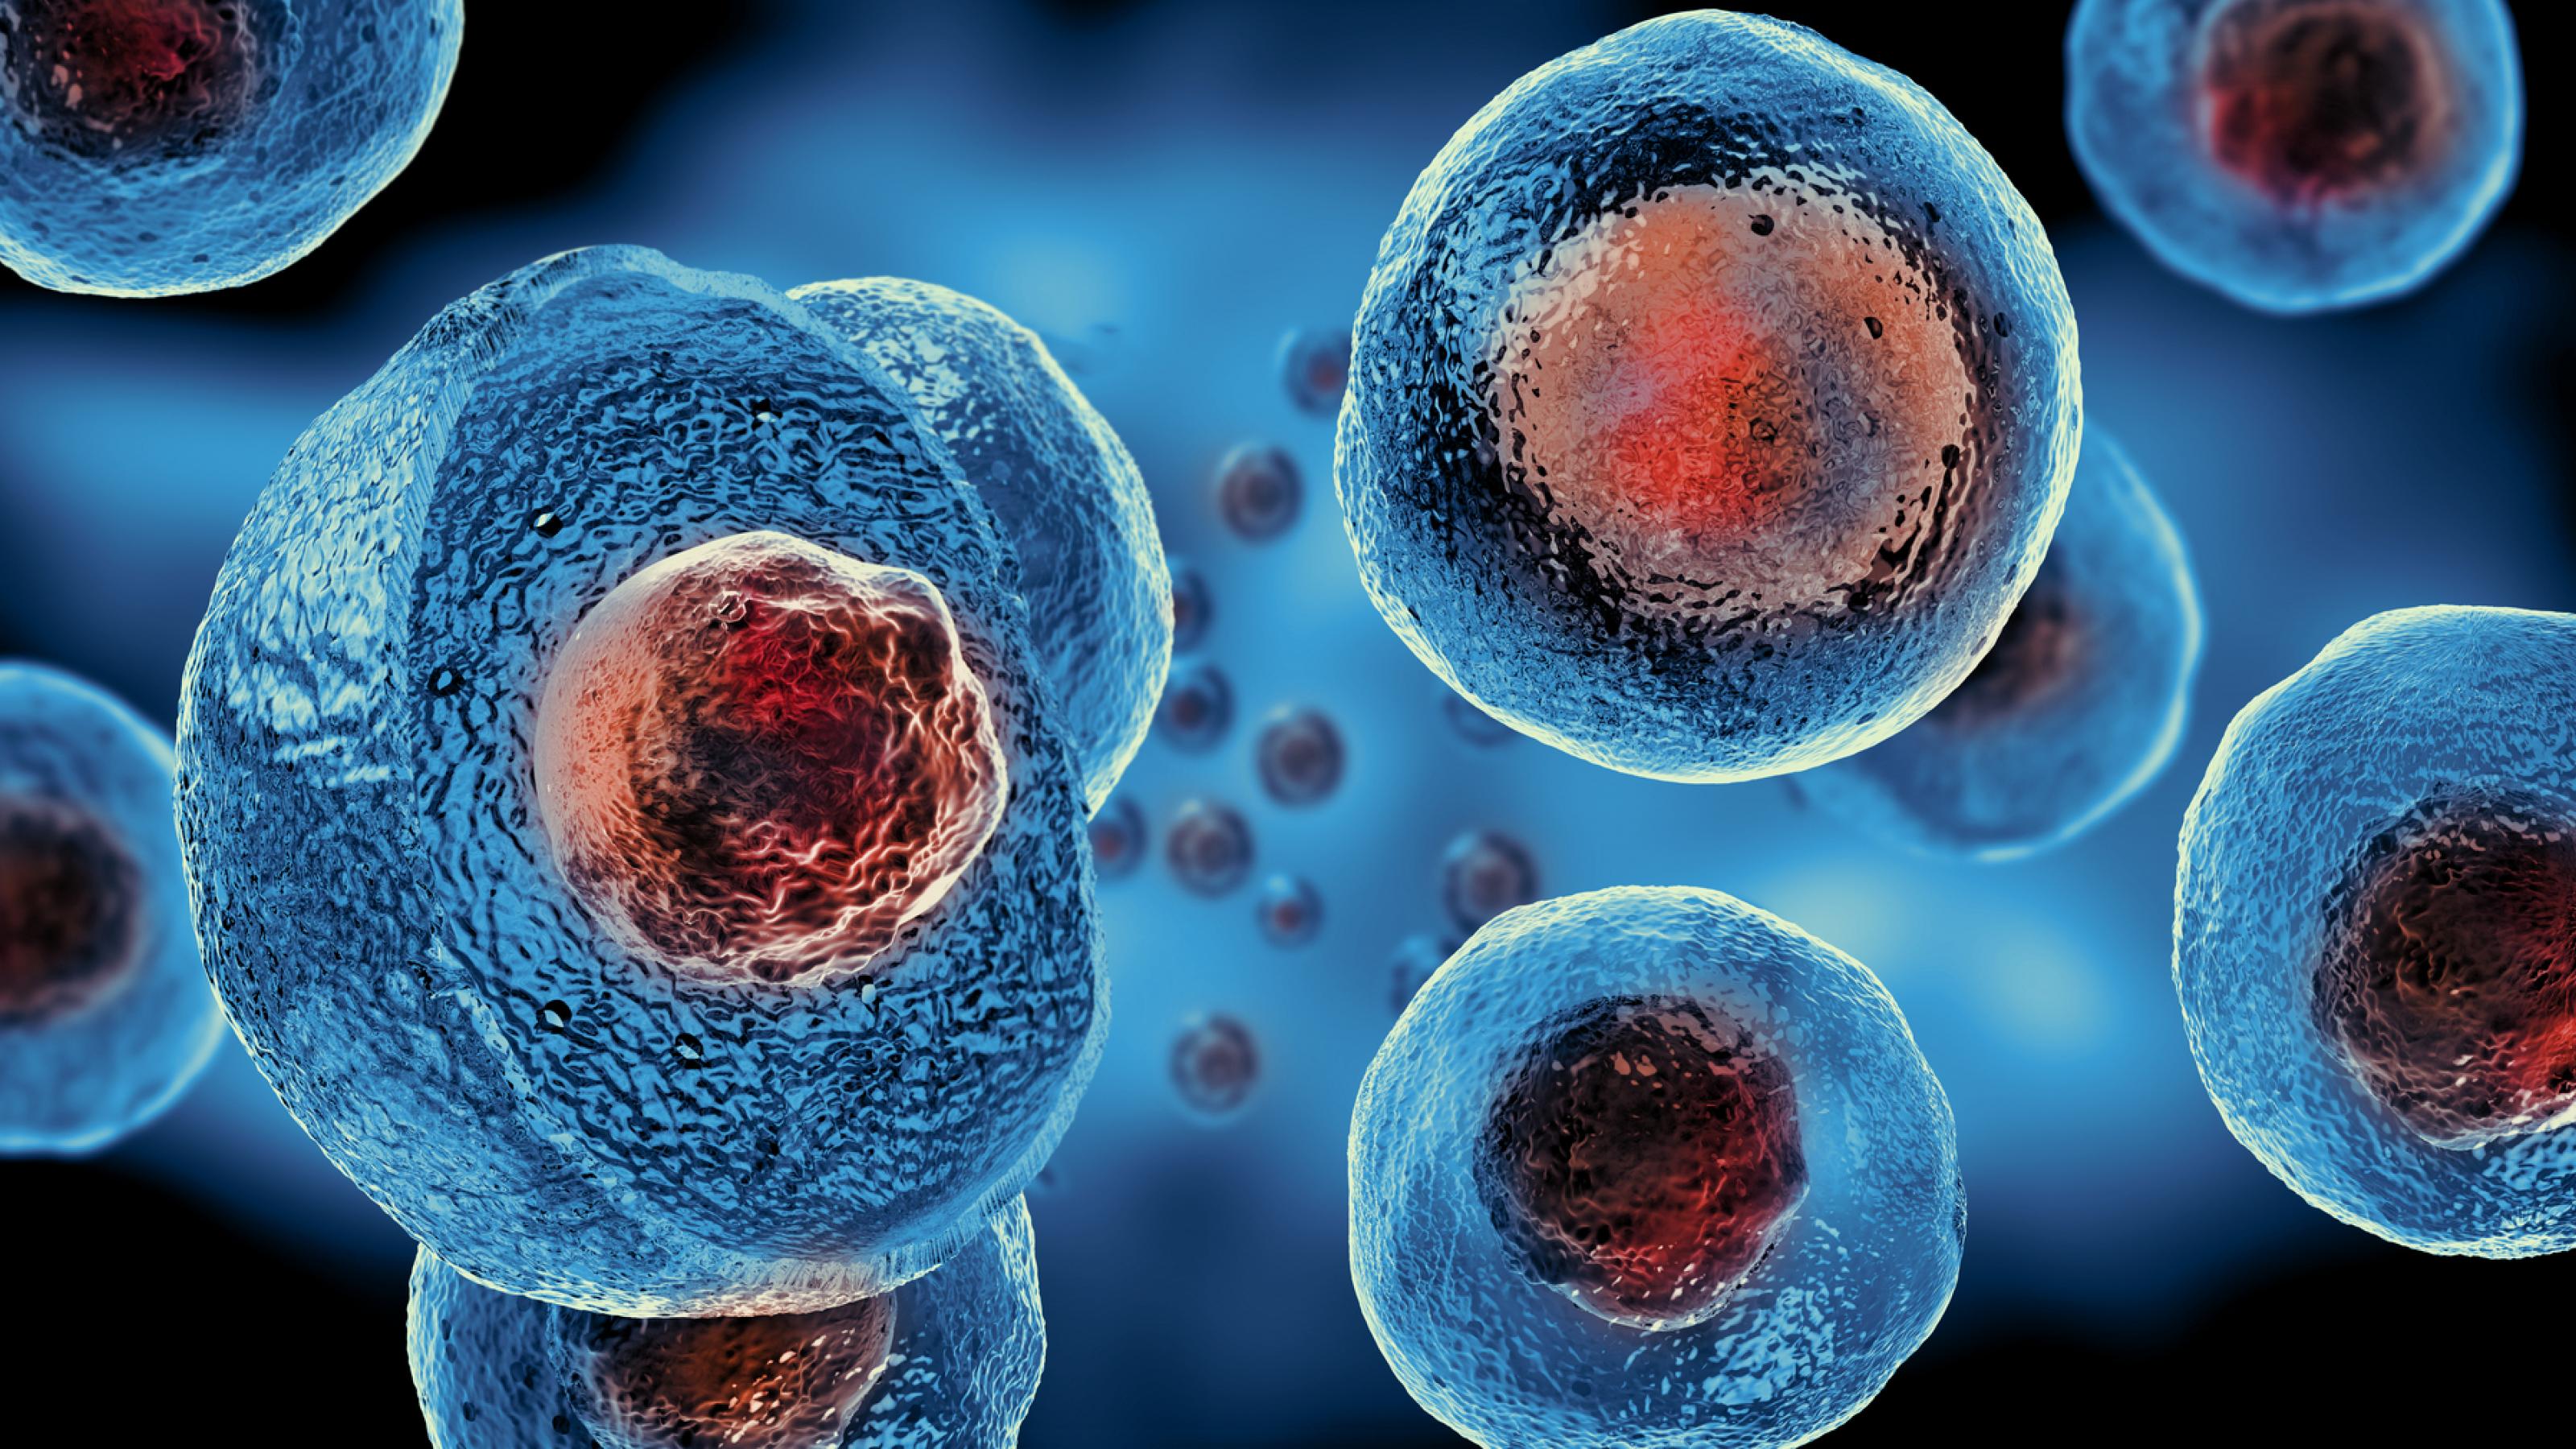 Eine Grafik zeigt mehrere runde, blau eingefärbte Zellen. Sie sind etwas durchsichtig, so dass ein rot gefärbter Zellkern hindurchscheint.